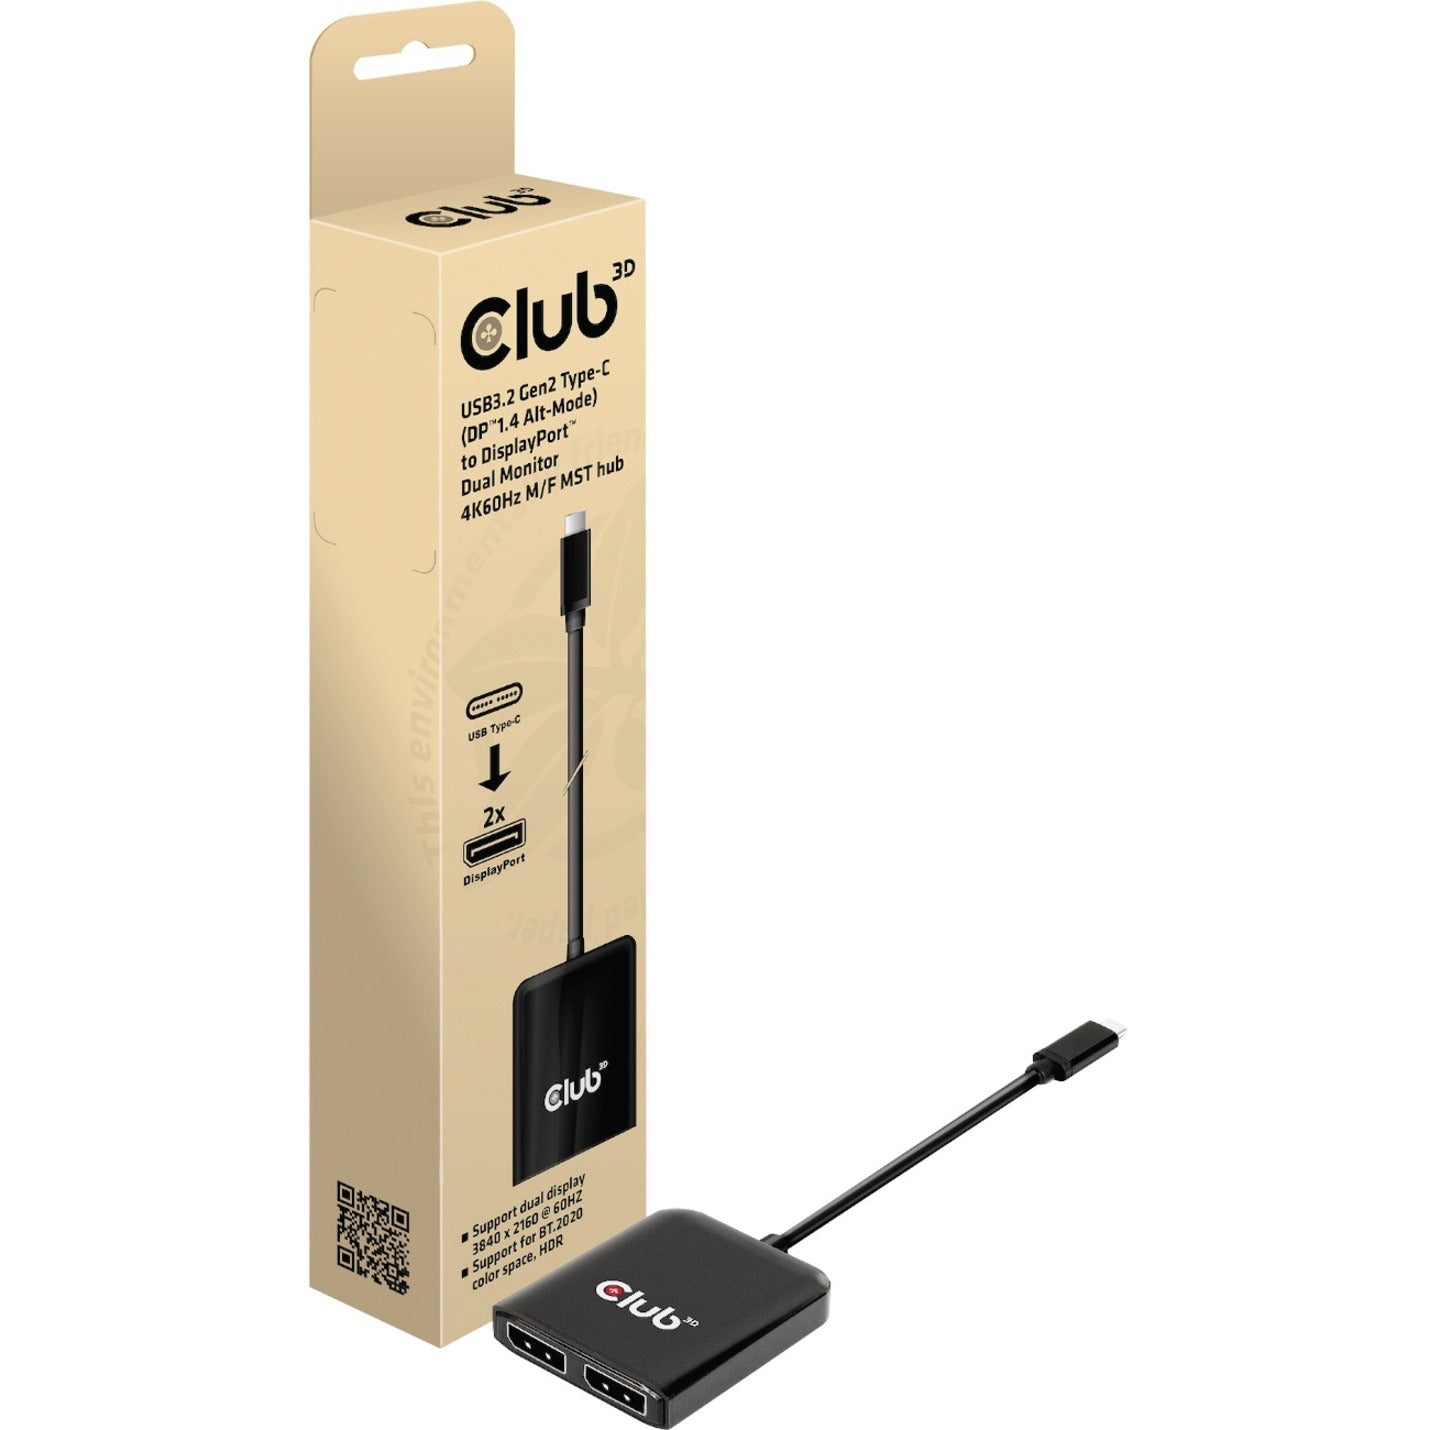 Club 3D CSV-1555 USB3.2 Gen2 Type-C(DP Alt-Mode) to DisplayPort Dual Monitor 4K60Hz M/F MST Hub, Maximum Video Resolution 3840 × 2160